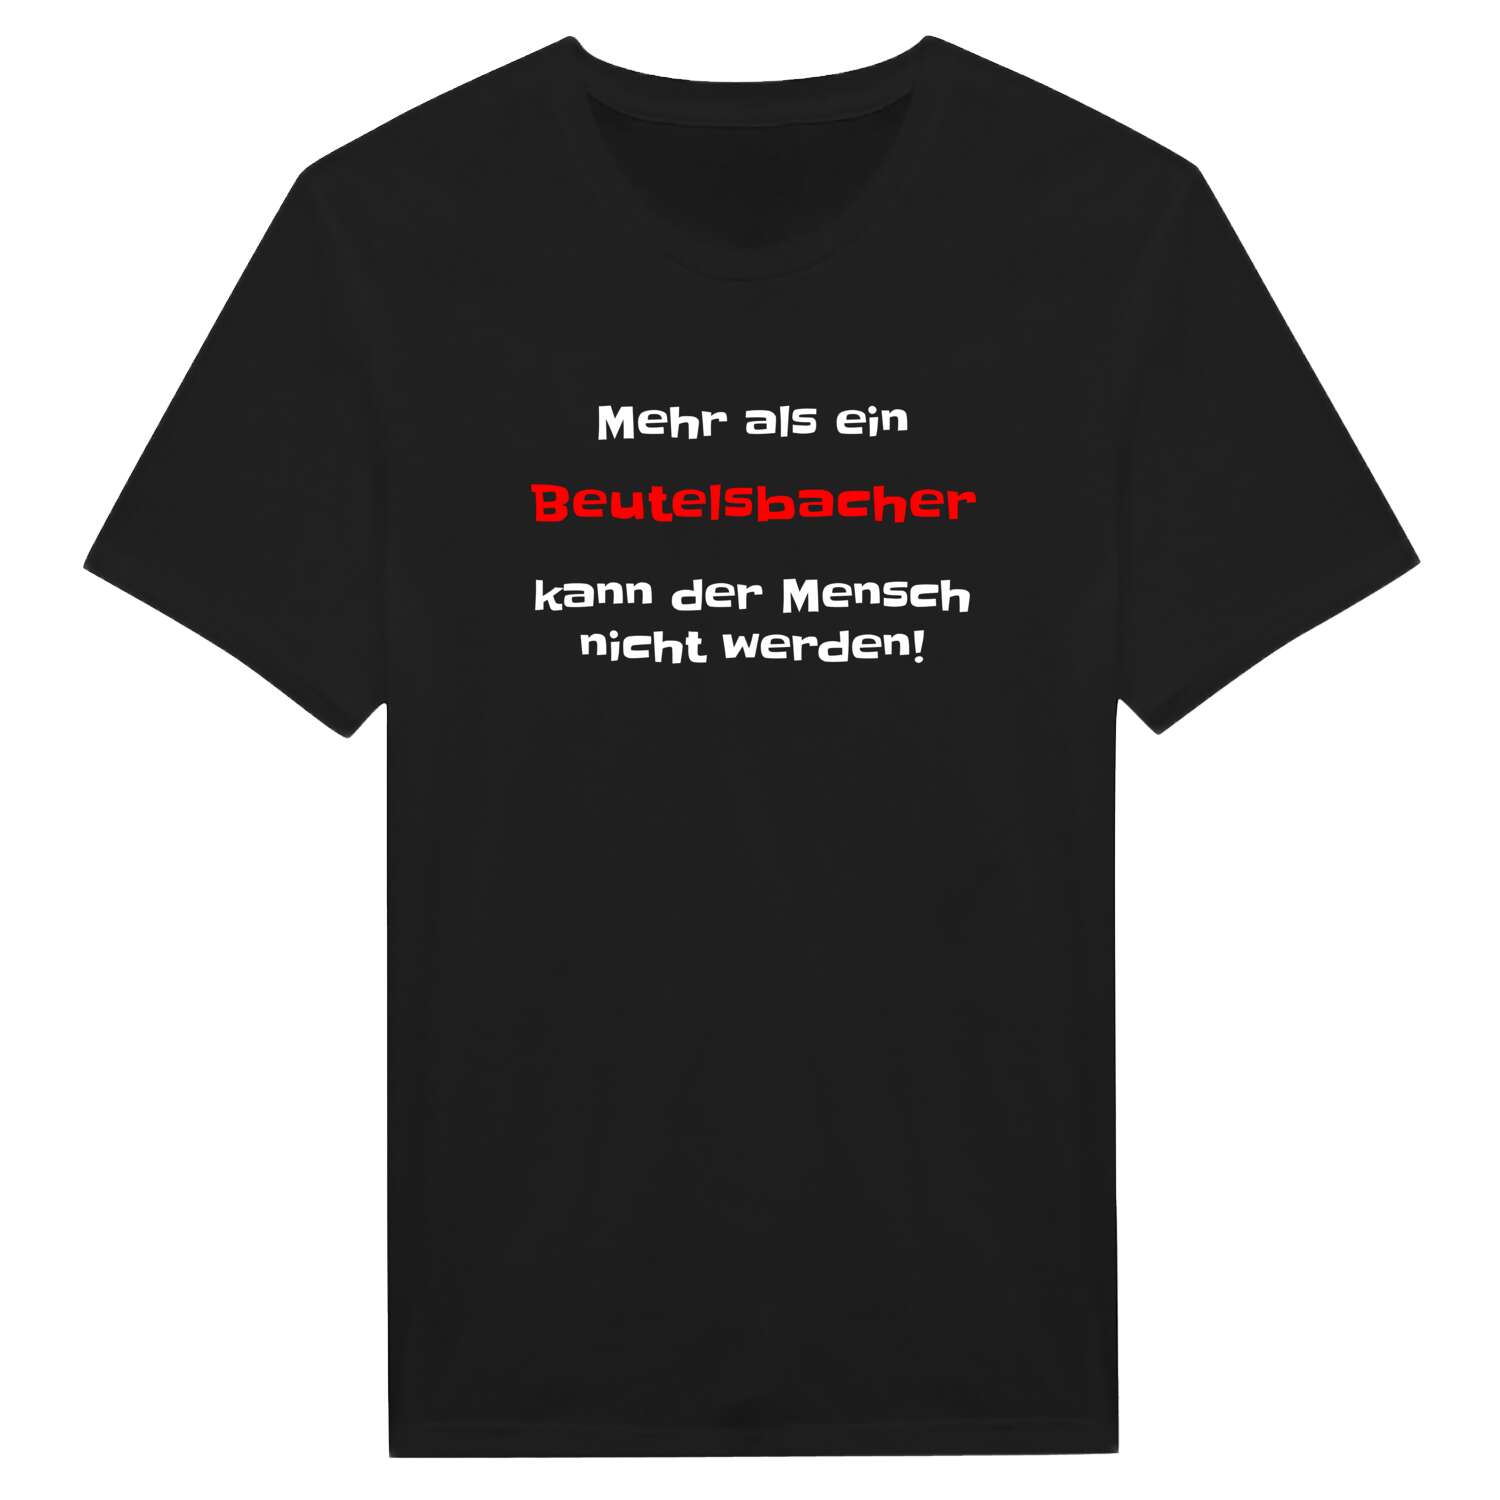 Beutelsbach T-Shirt »Mehr als ein«